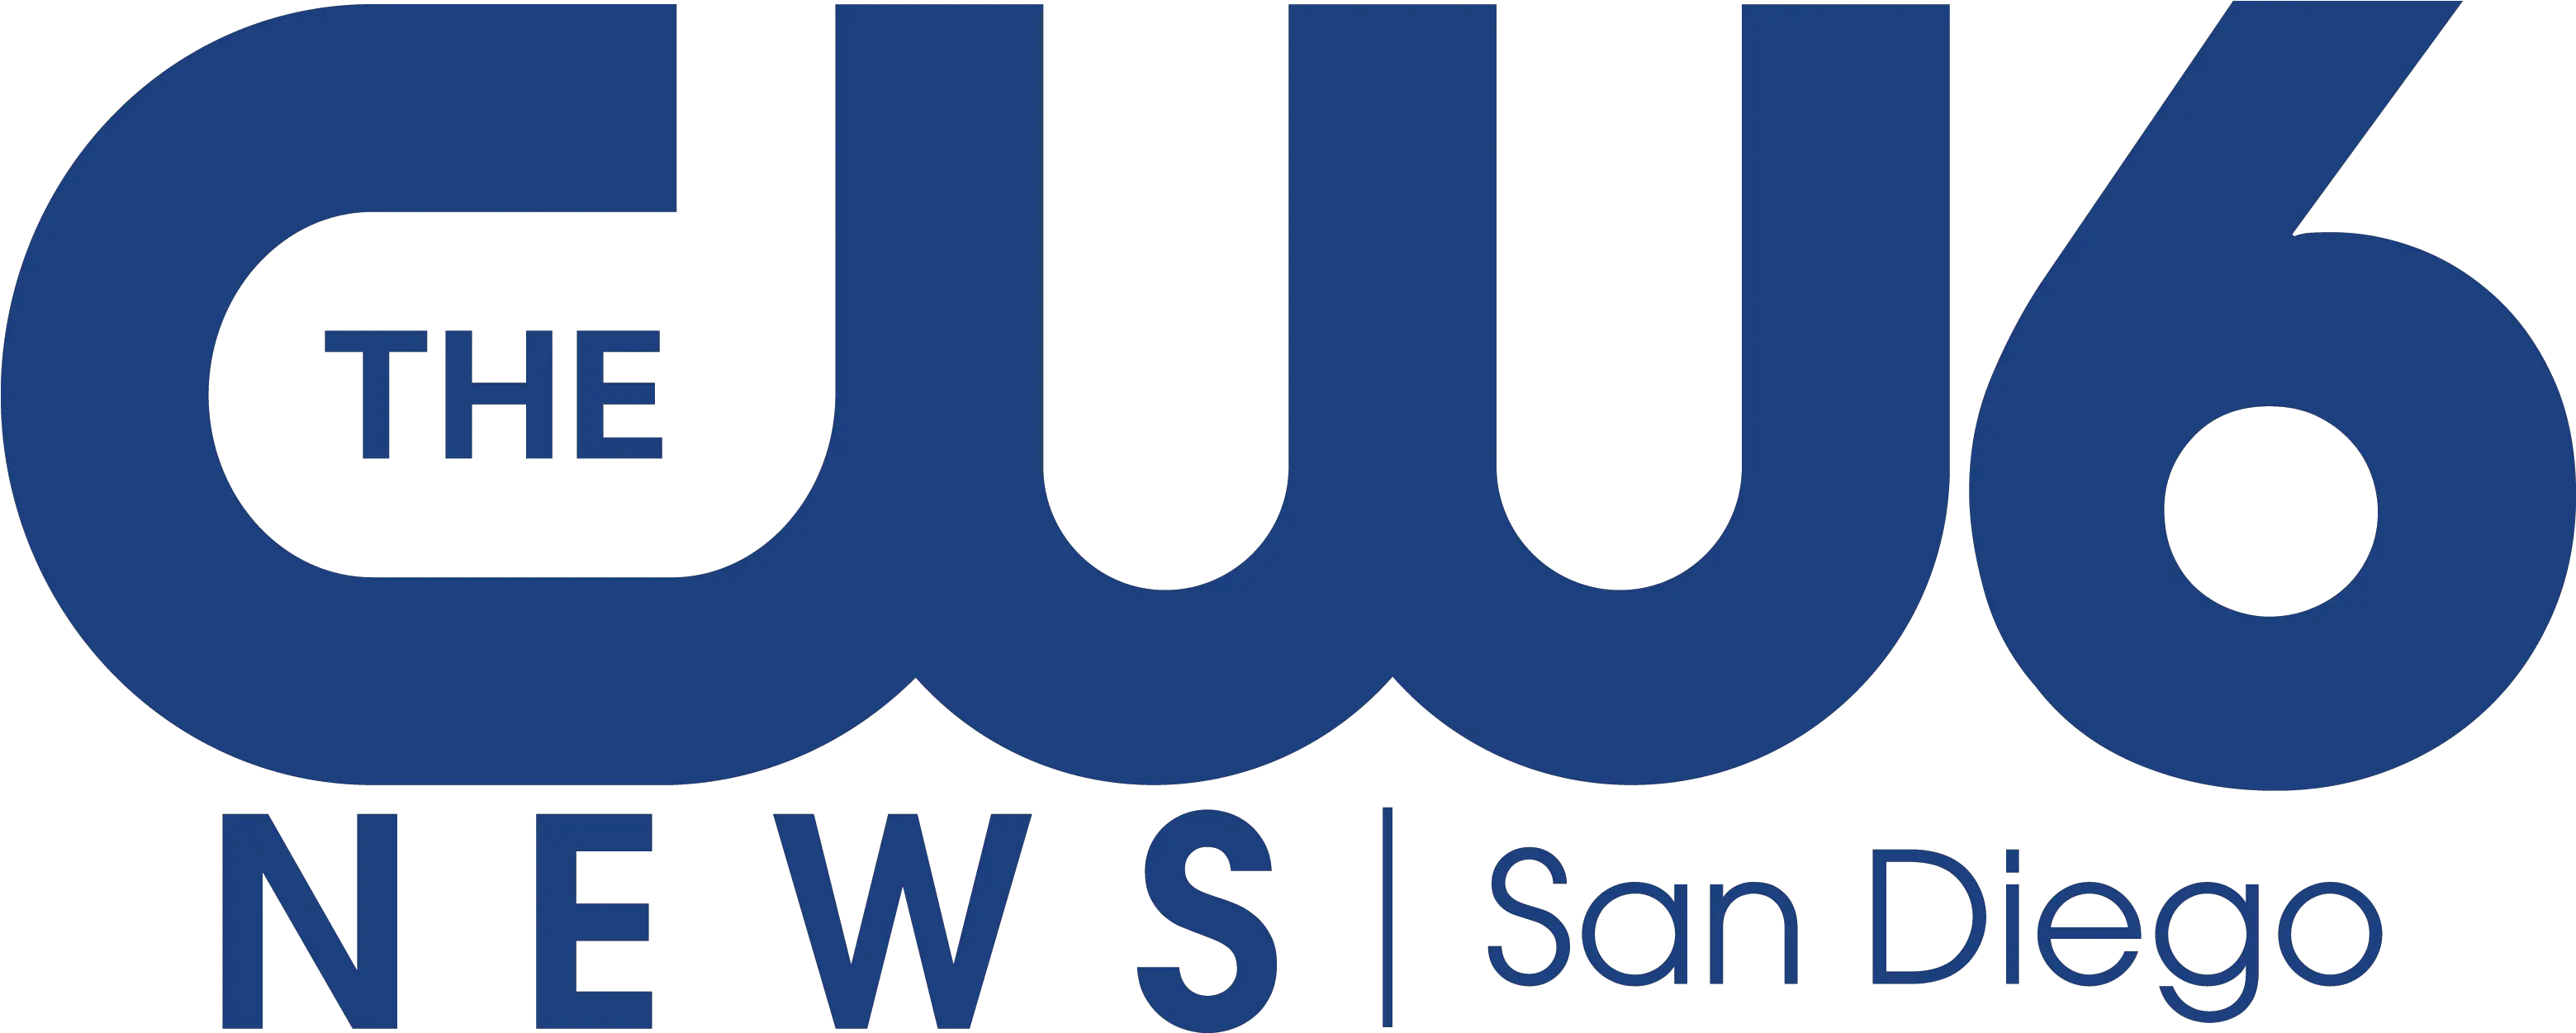 Cw 6 News Logo 2016 La Neta Png Cw Logo